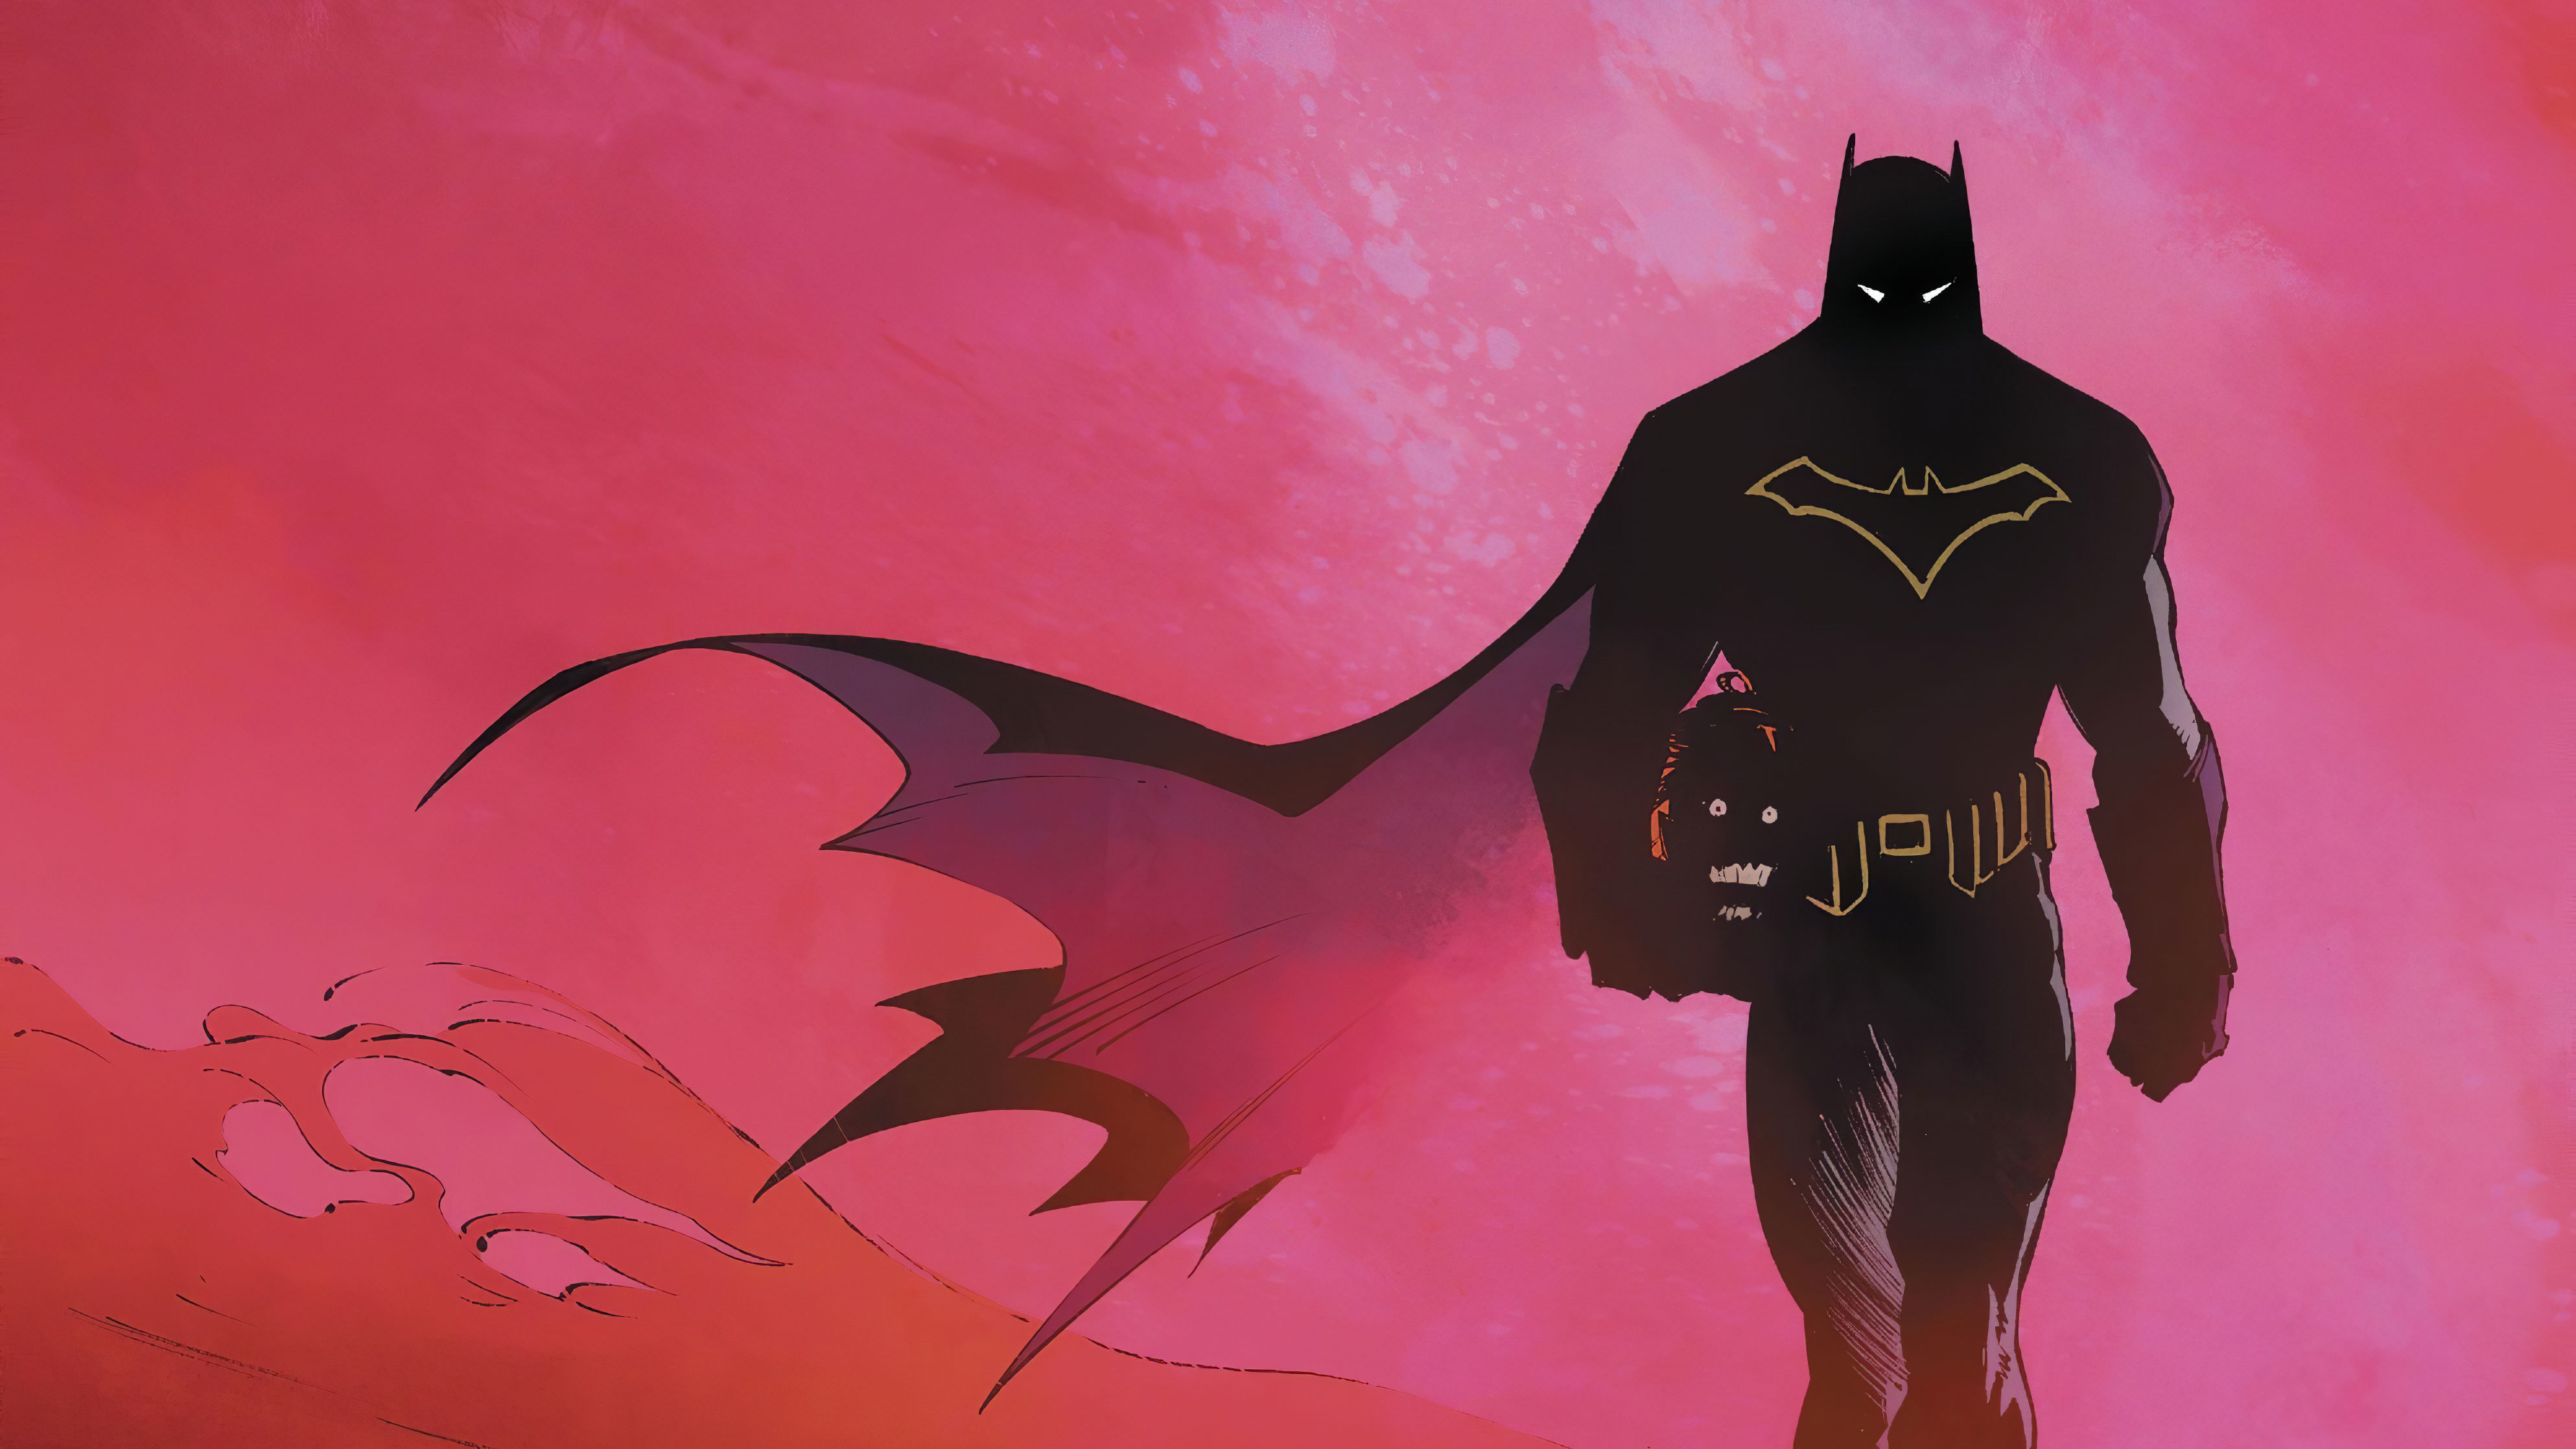 Batman Last Knight On Earth , HD Wallpaper & Backgrounds